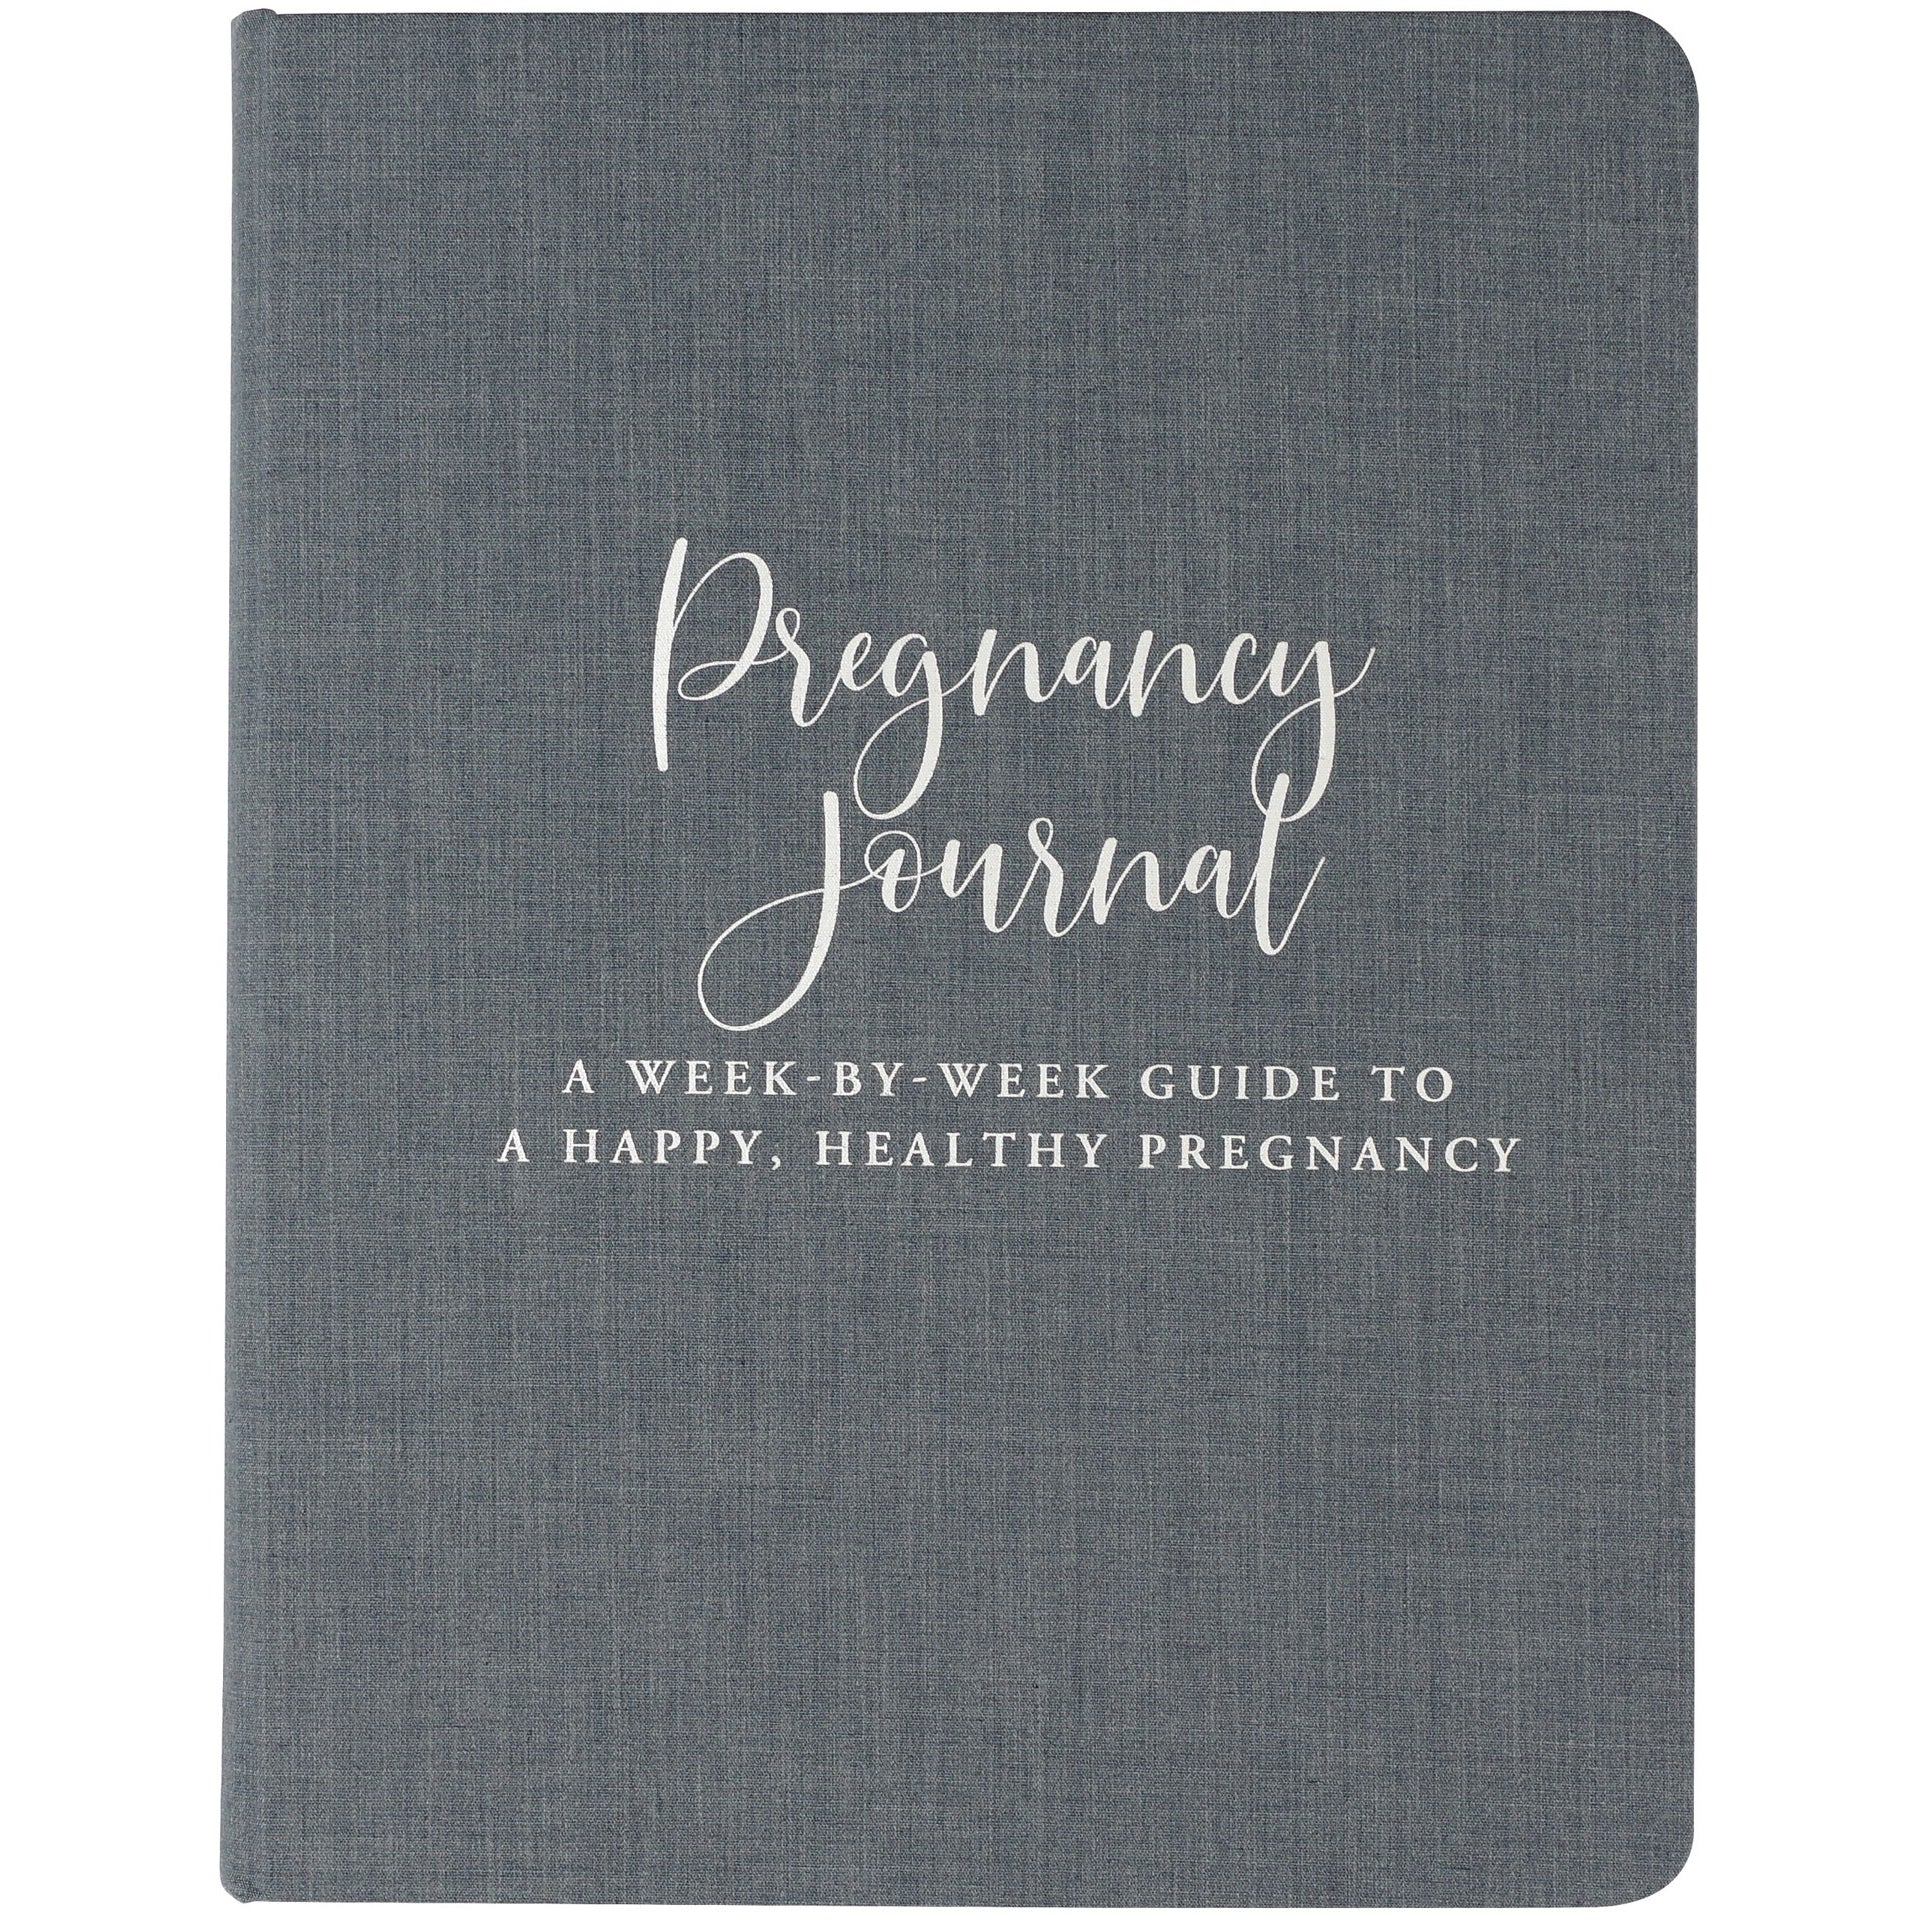 Pregnancy Journal - a week-by-week guide - Paper Kooka